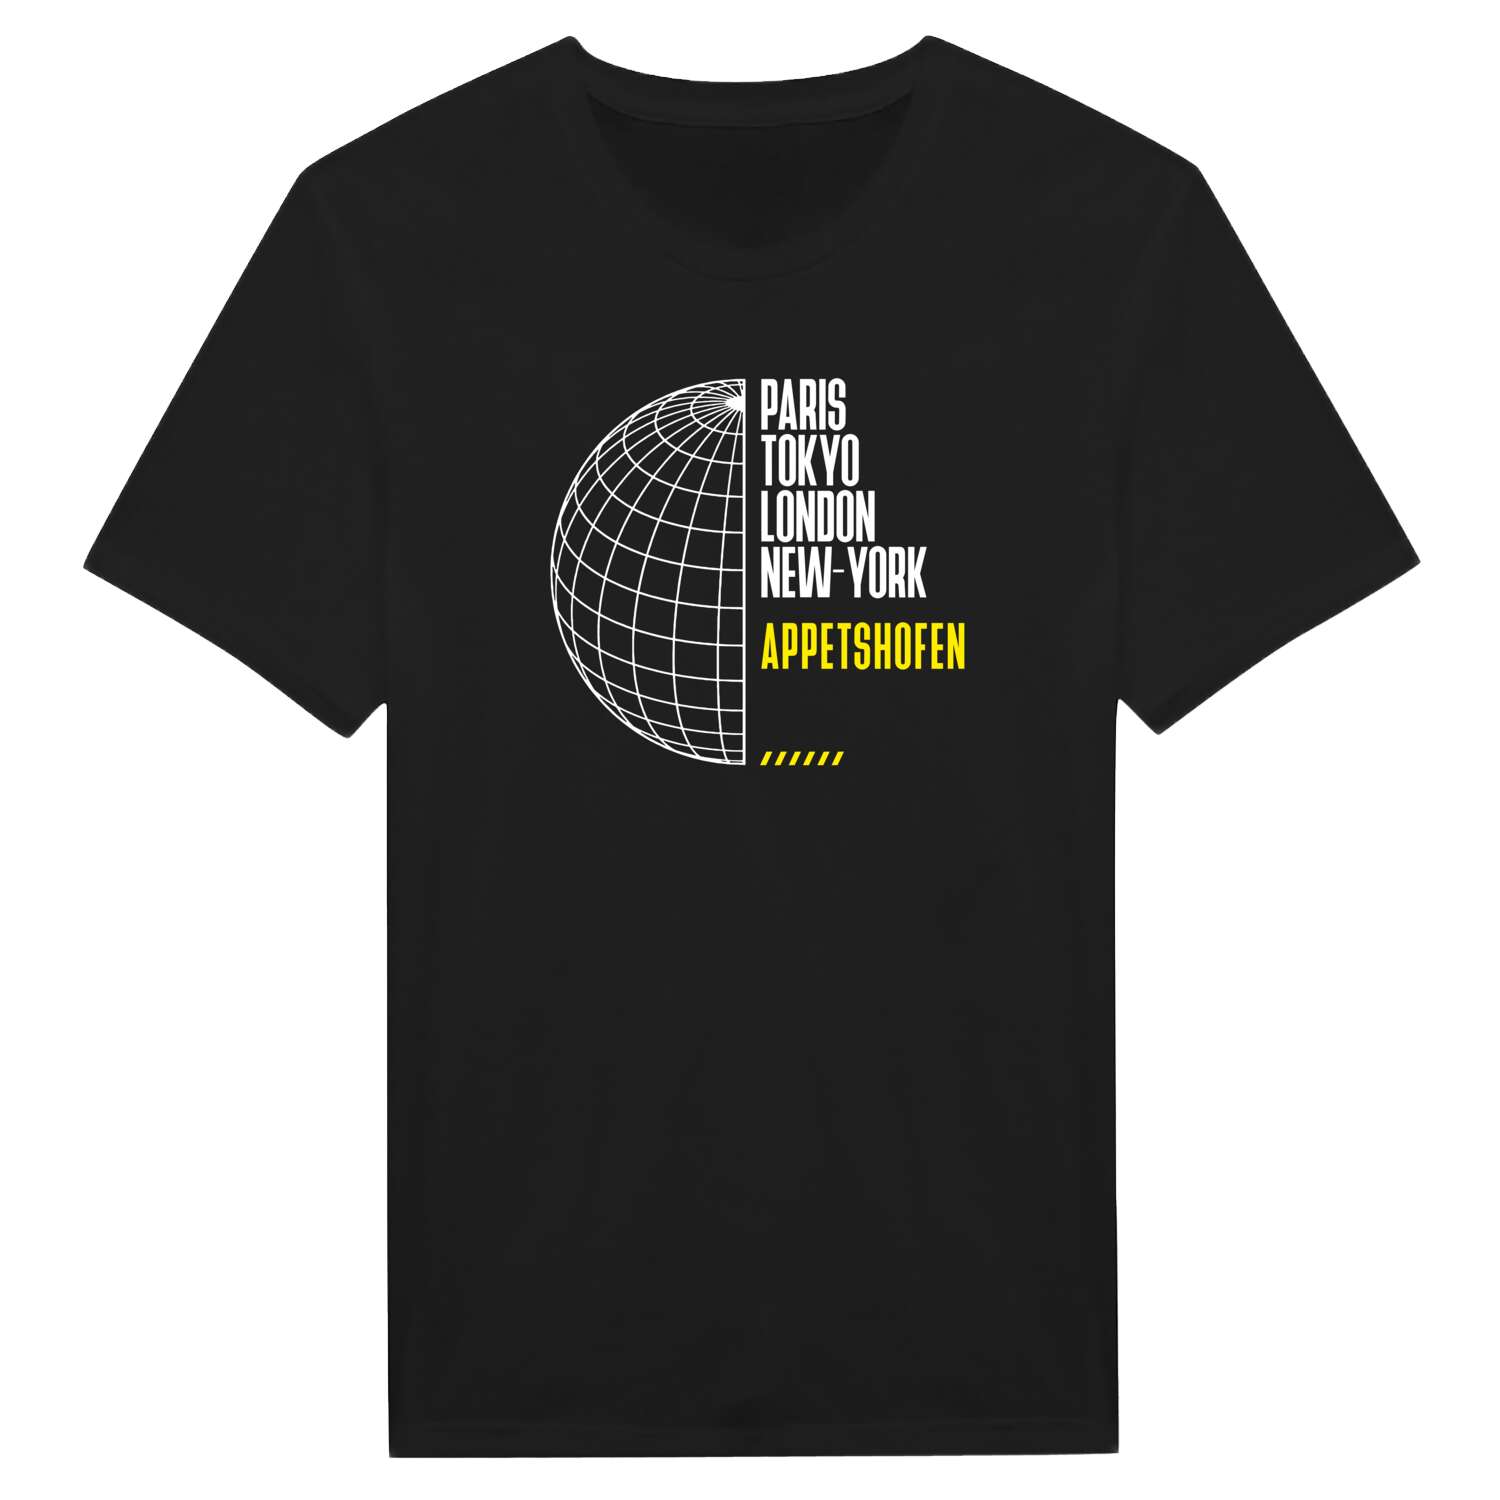 Appetshofen T-Shirt »Paris Tokyo London«